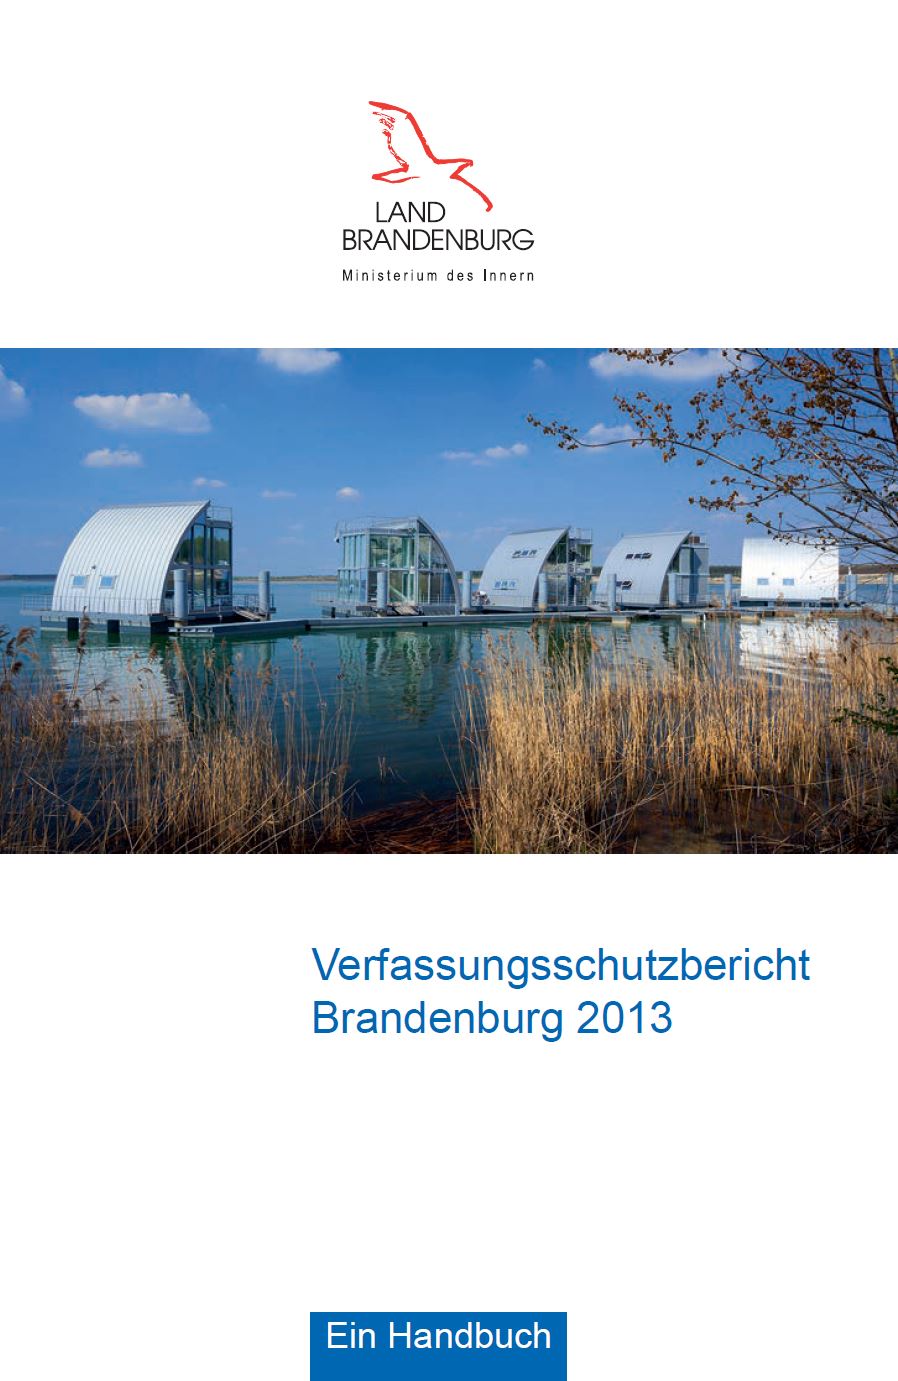 Bild vergrößern (Bild: Titelseite Verfassungsschutzbericht 2013)